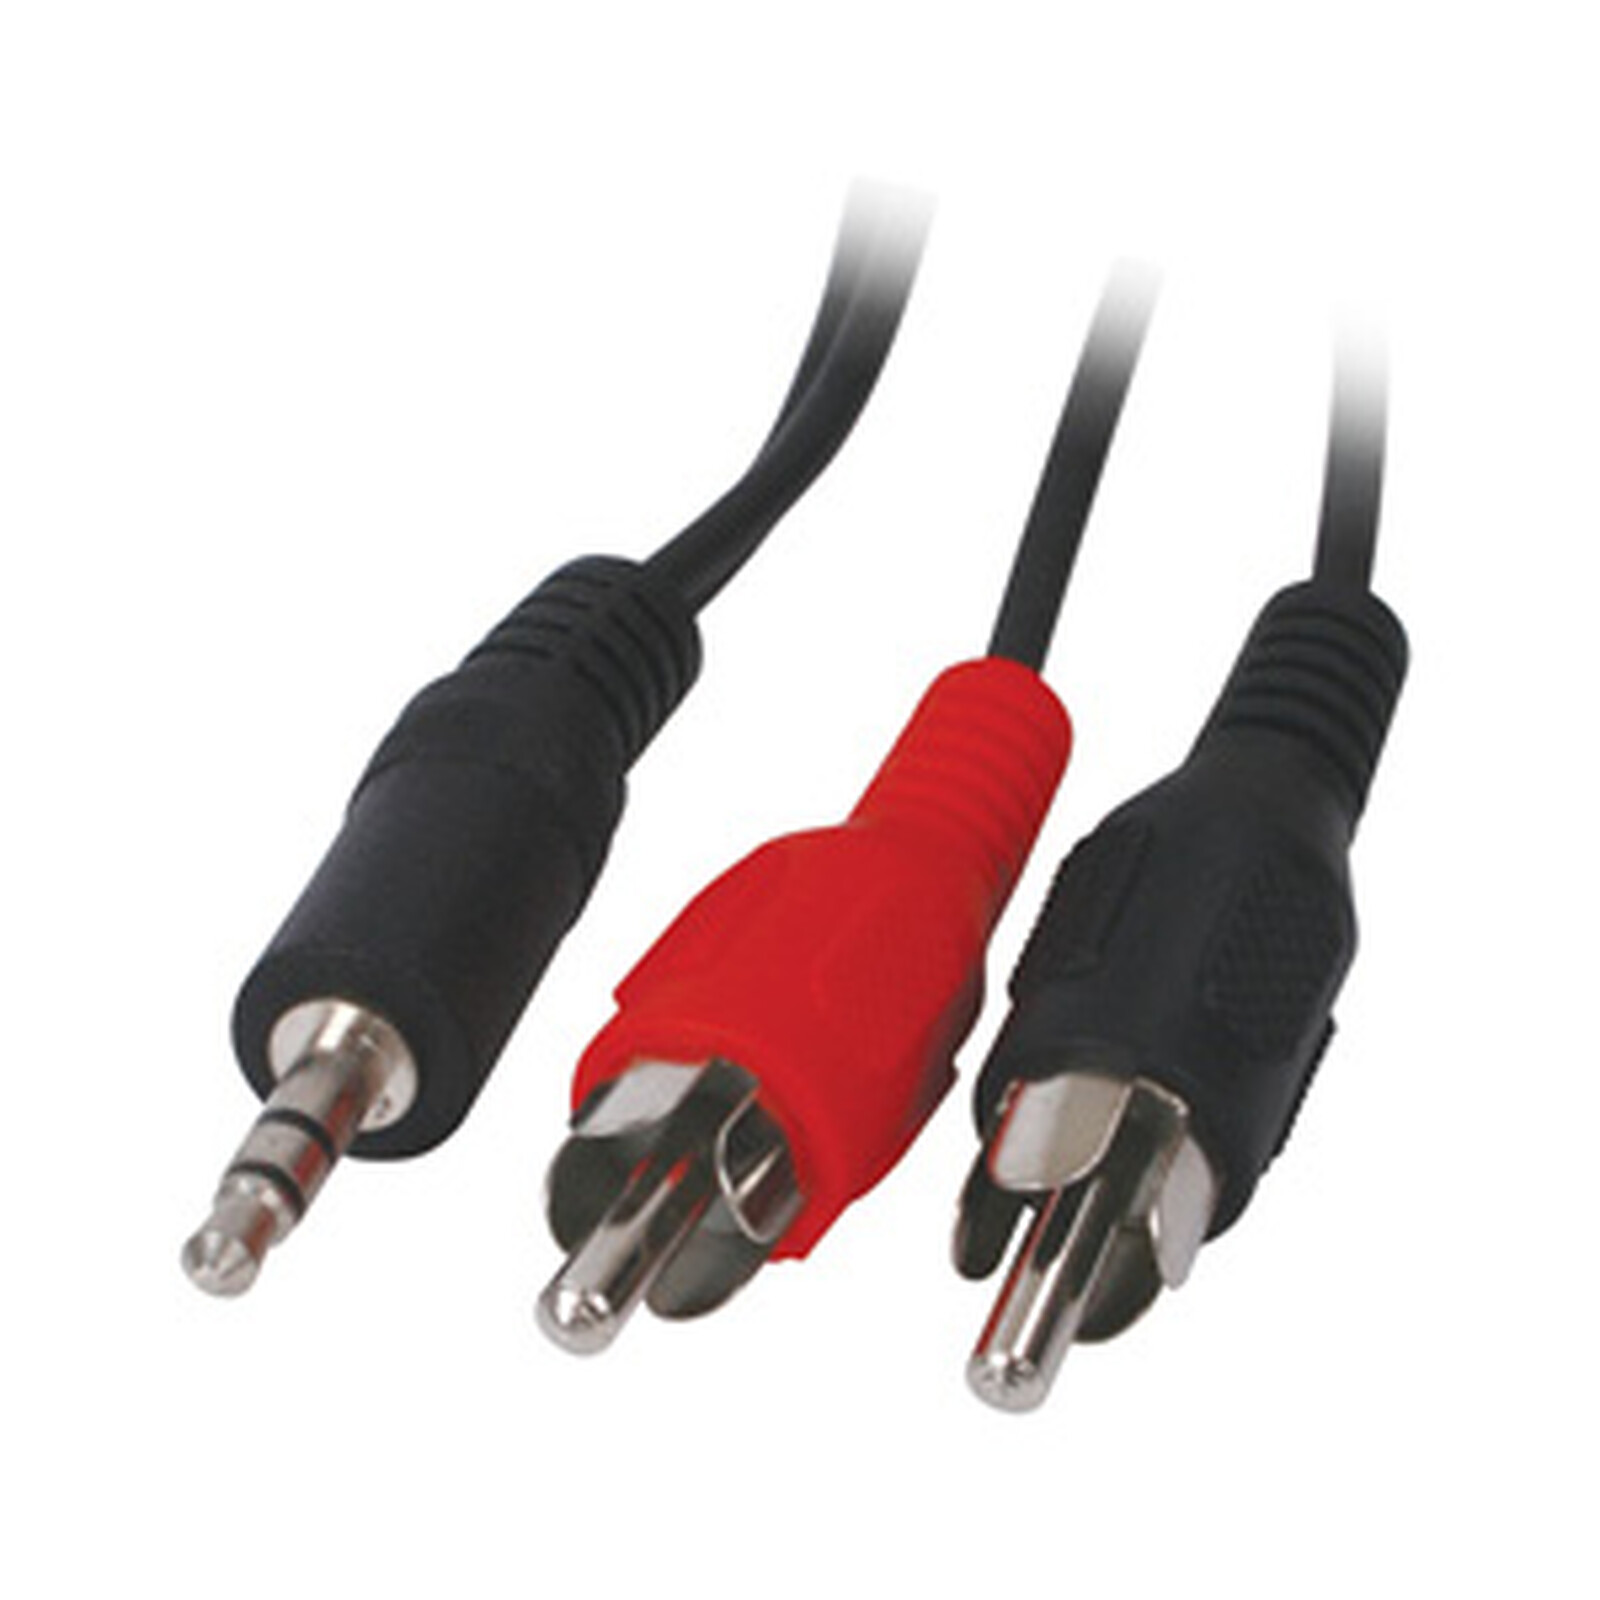 Cable de audio Jack 3,5 mm estéreo macho 2 RCA (3 metros) - Adaptador audio Genérica en